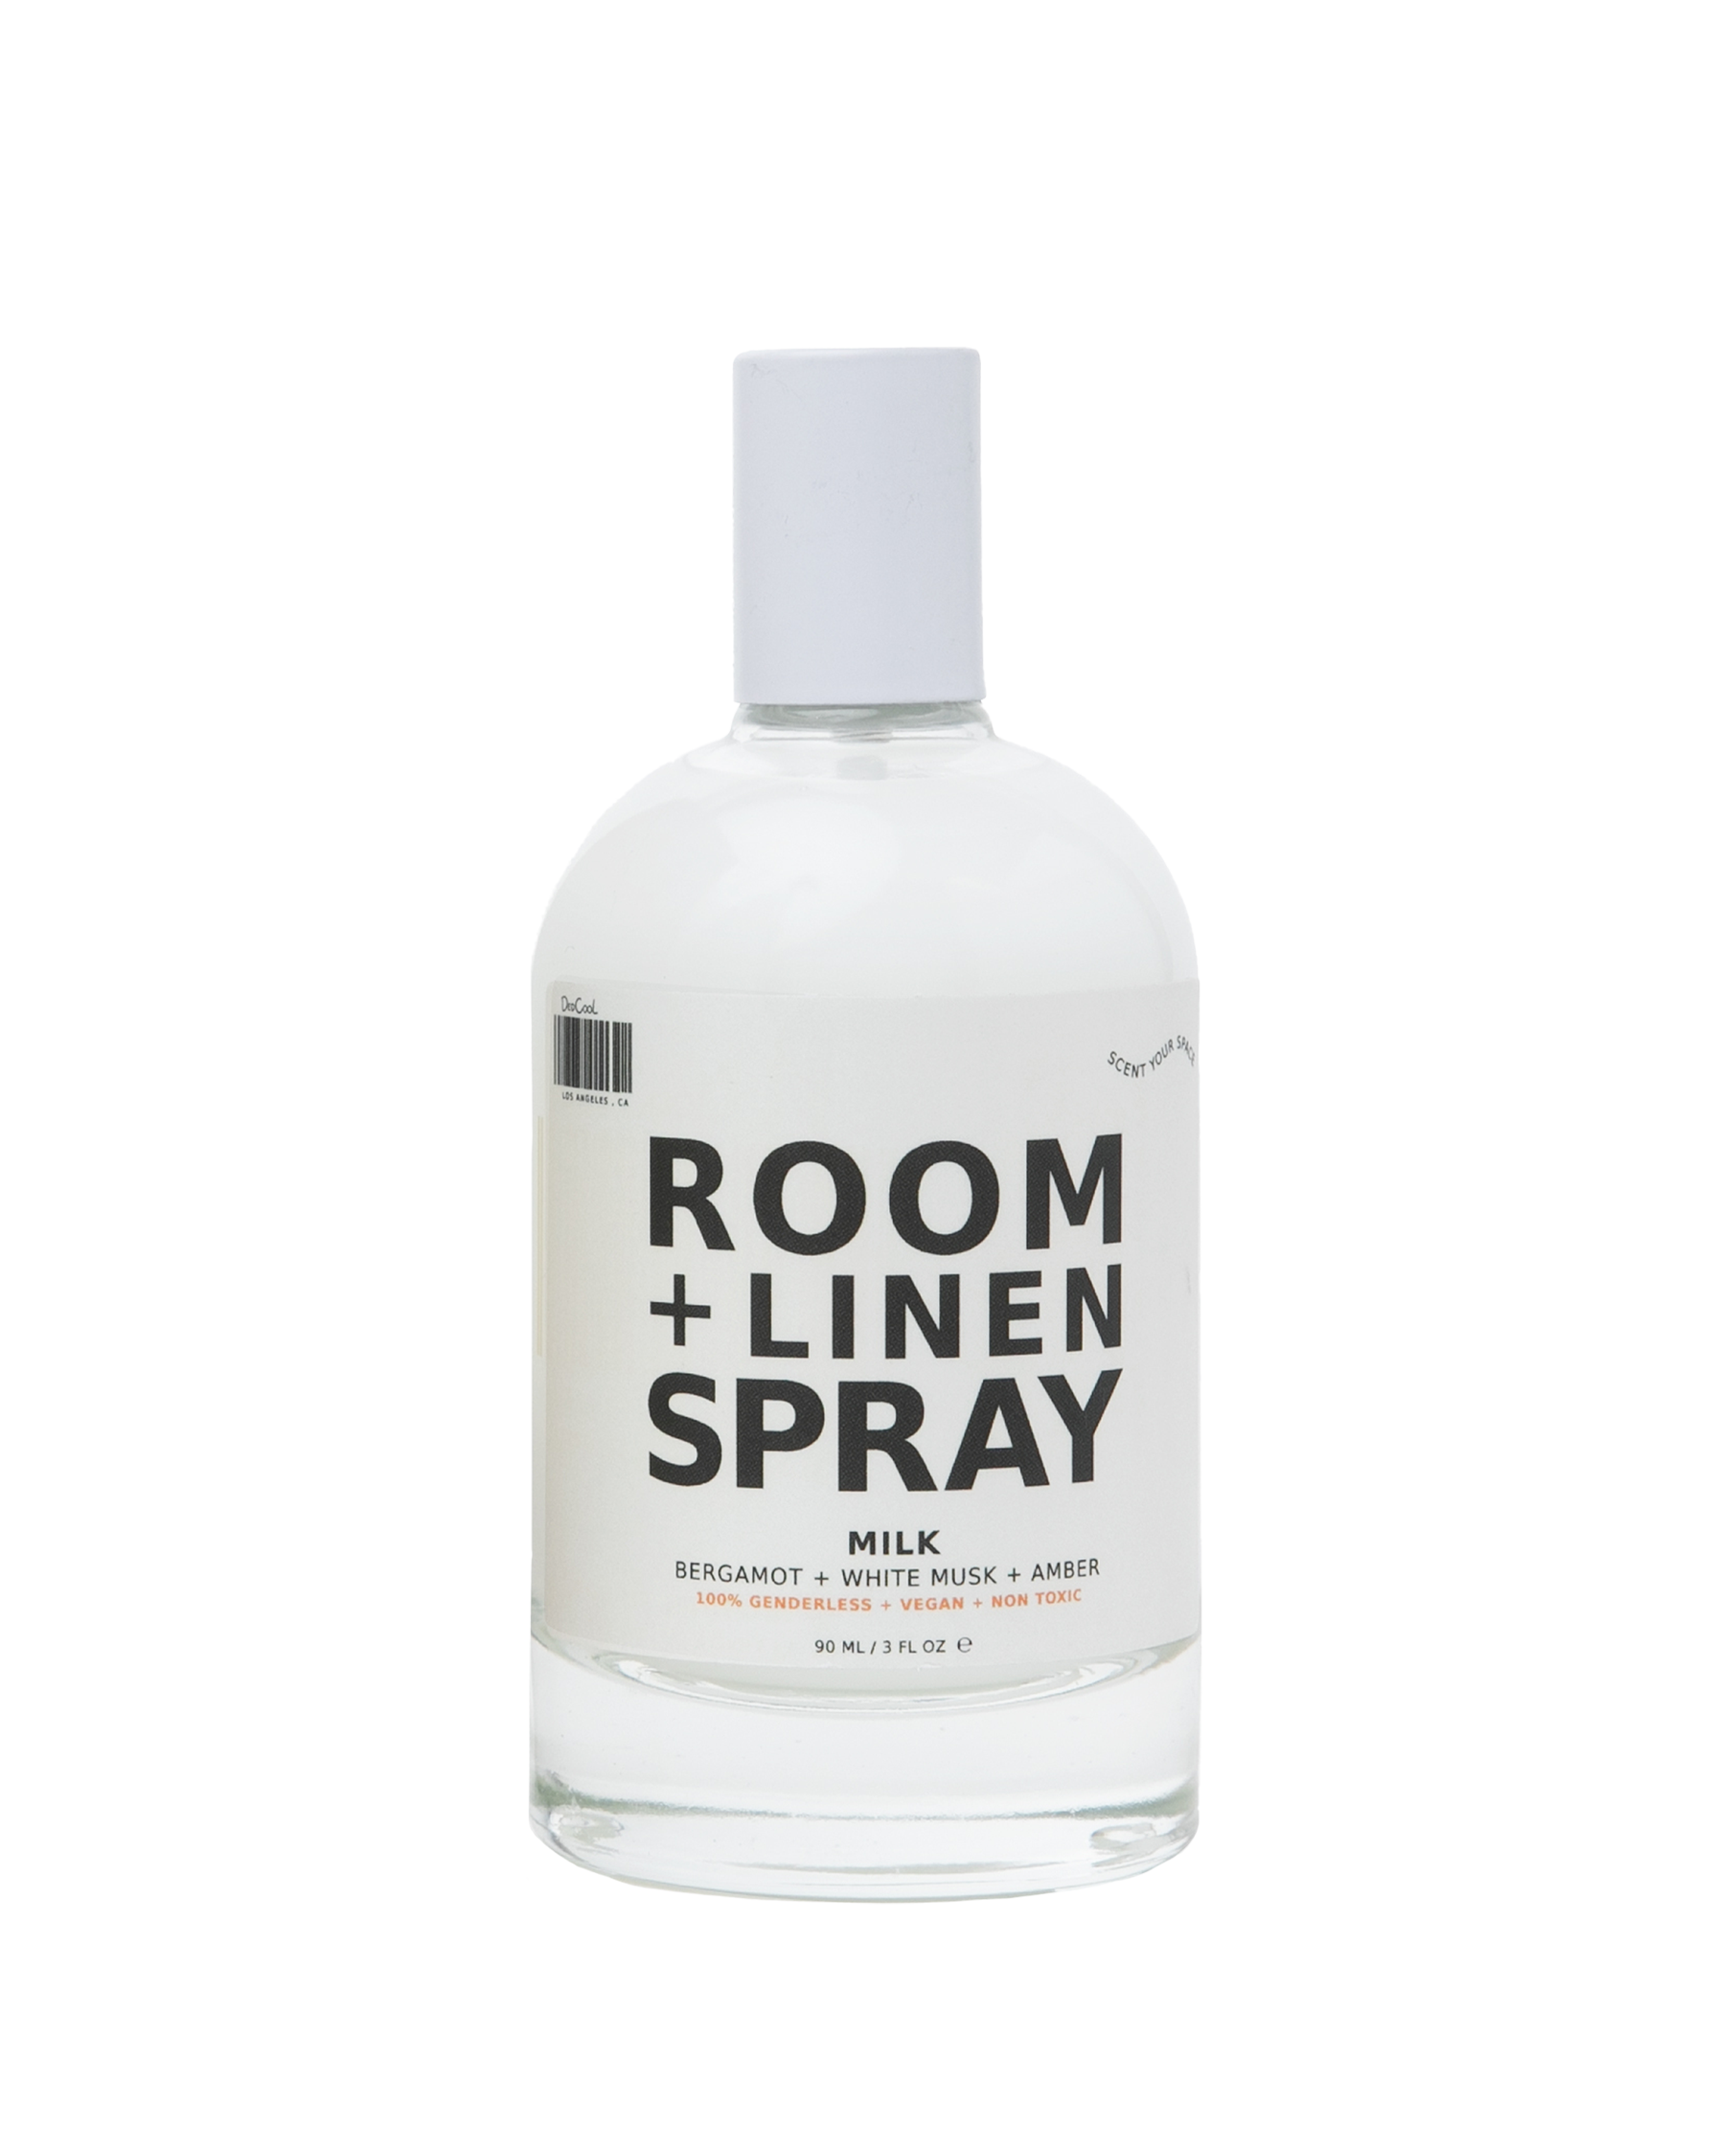 DedCool Room + Linen Spray MILK